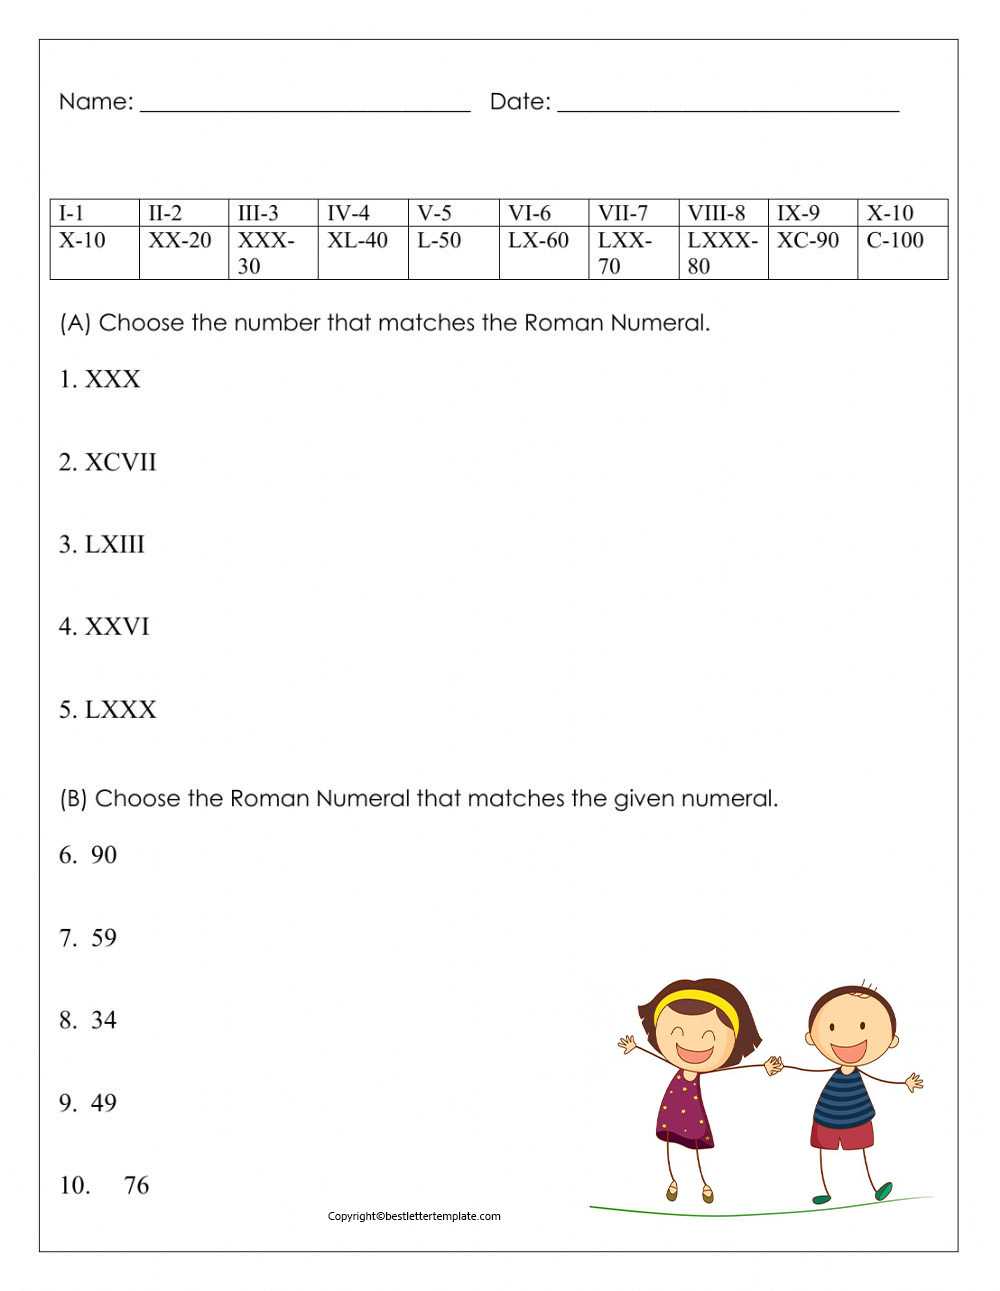 Roman Numerals worksheet